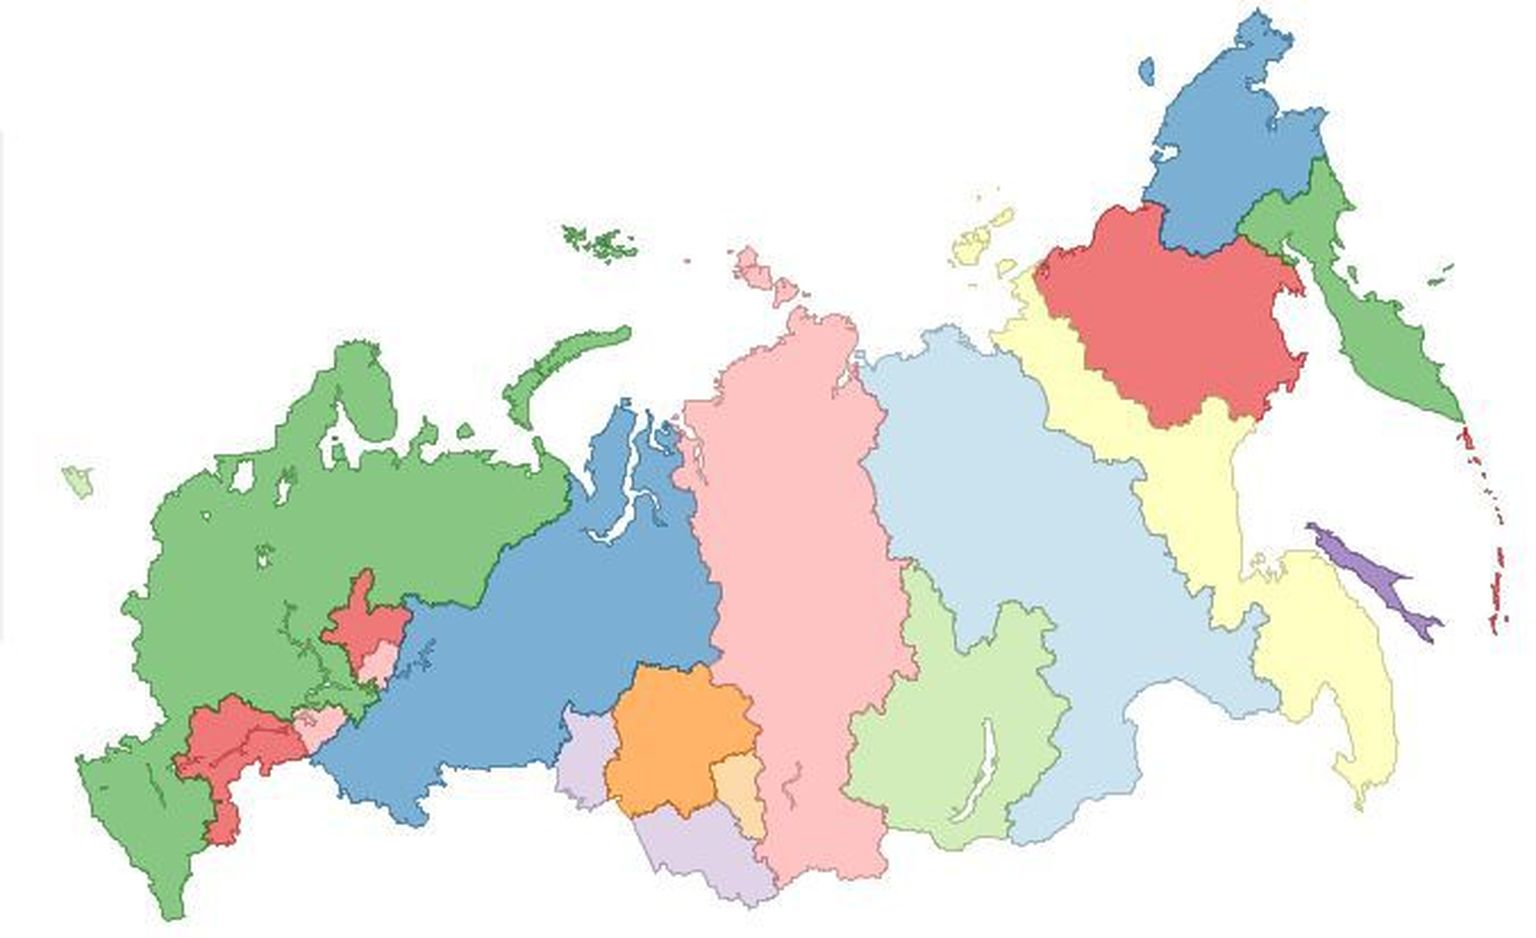 Venemaa ajavööndid enne 2010. aasta sügist.